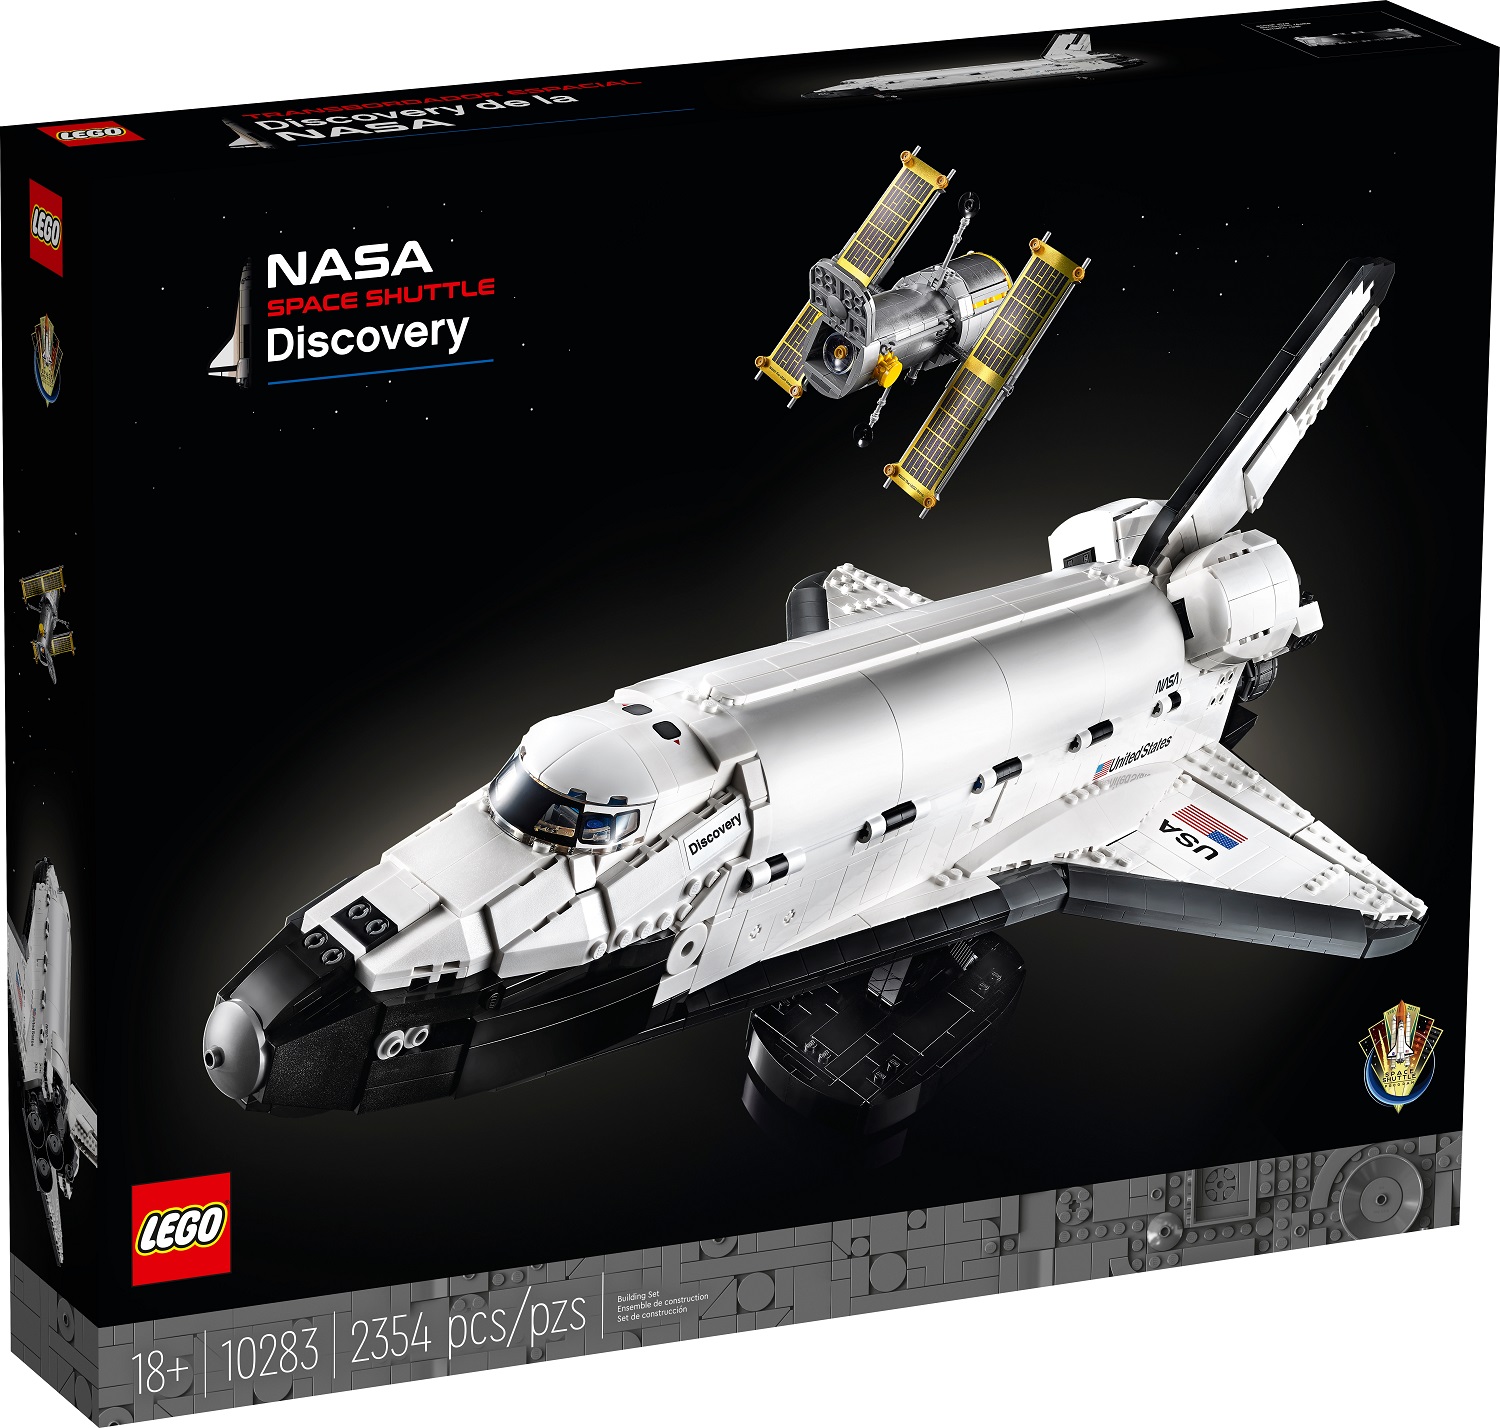 Az űrbe repít minket a LEGO 17